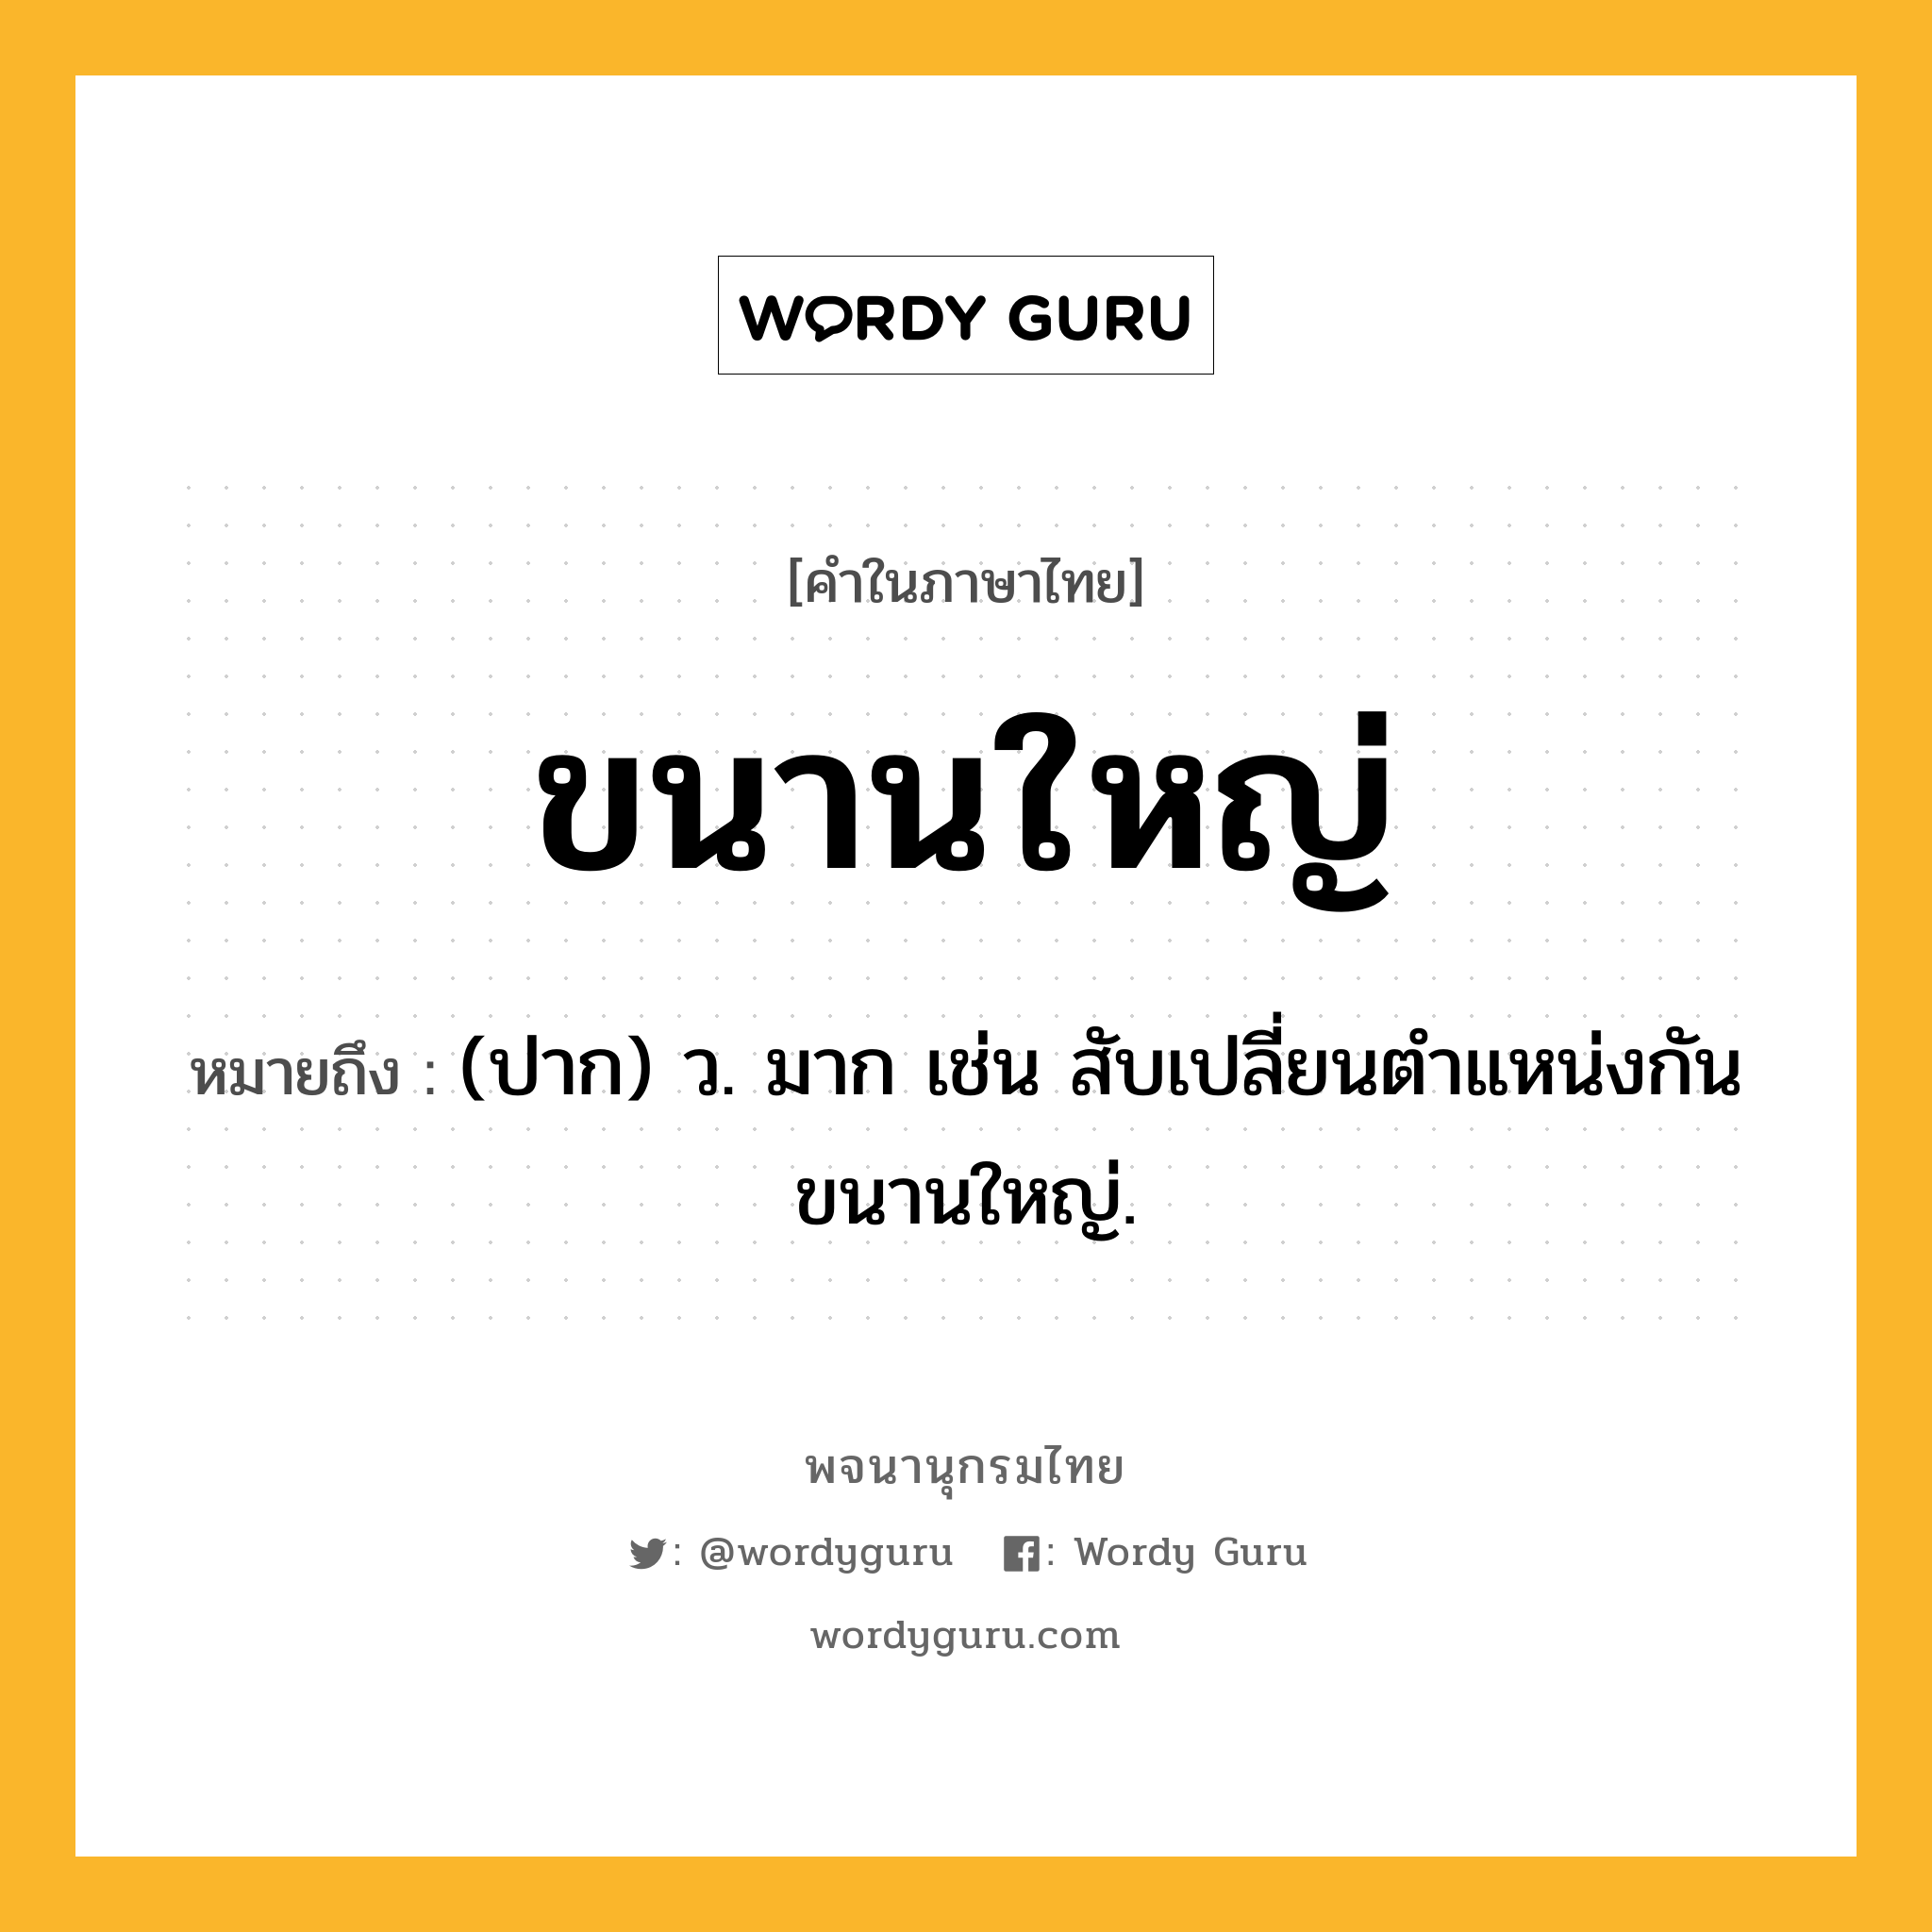 ขนานใหญ่ หมายถึงอะไร?, คำในภาษาไทย ขนานใหญ่ หมายถึง (ปาก) ว. มาก เช่น สับเปลี่ยนตำแหน่งกันขนานใหญ่.